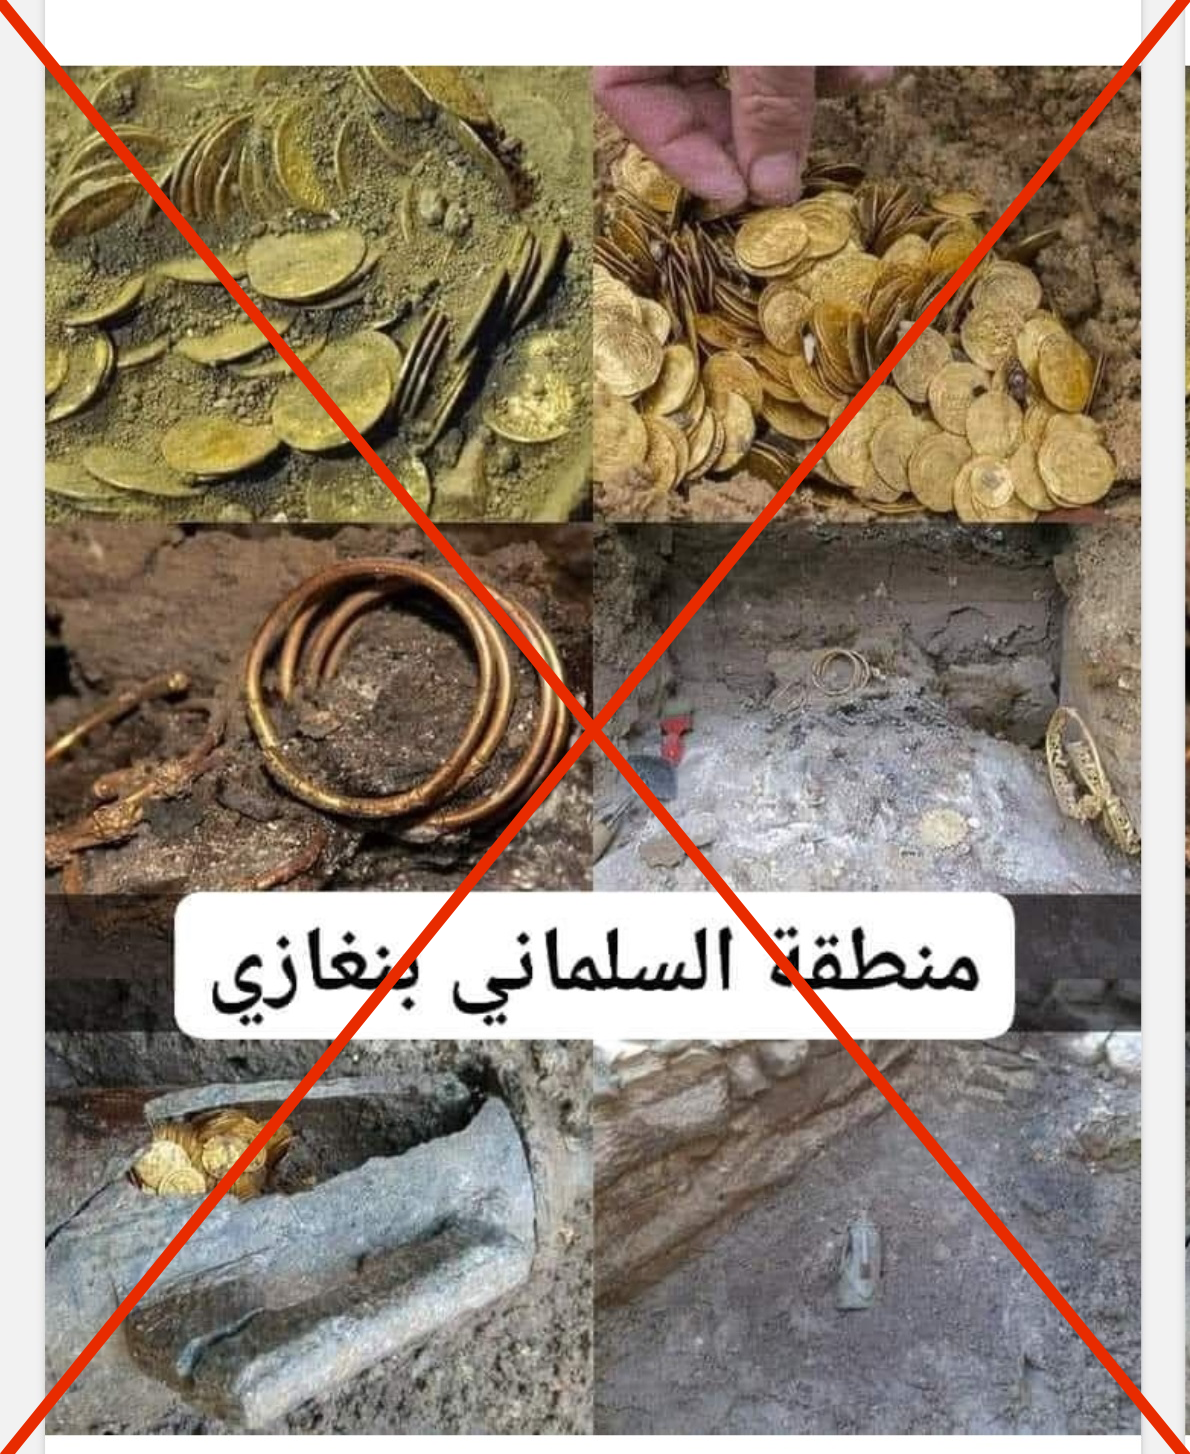 مضلل: هذه الصور لعملات وقطع ذهبية أثرية مُكتشفة حول العالم ولم يتم العثور عليها في منطقة السلماني بمدينة بنغازي